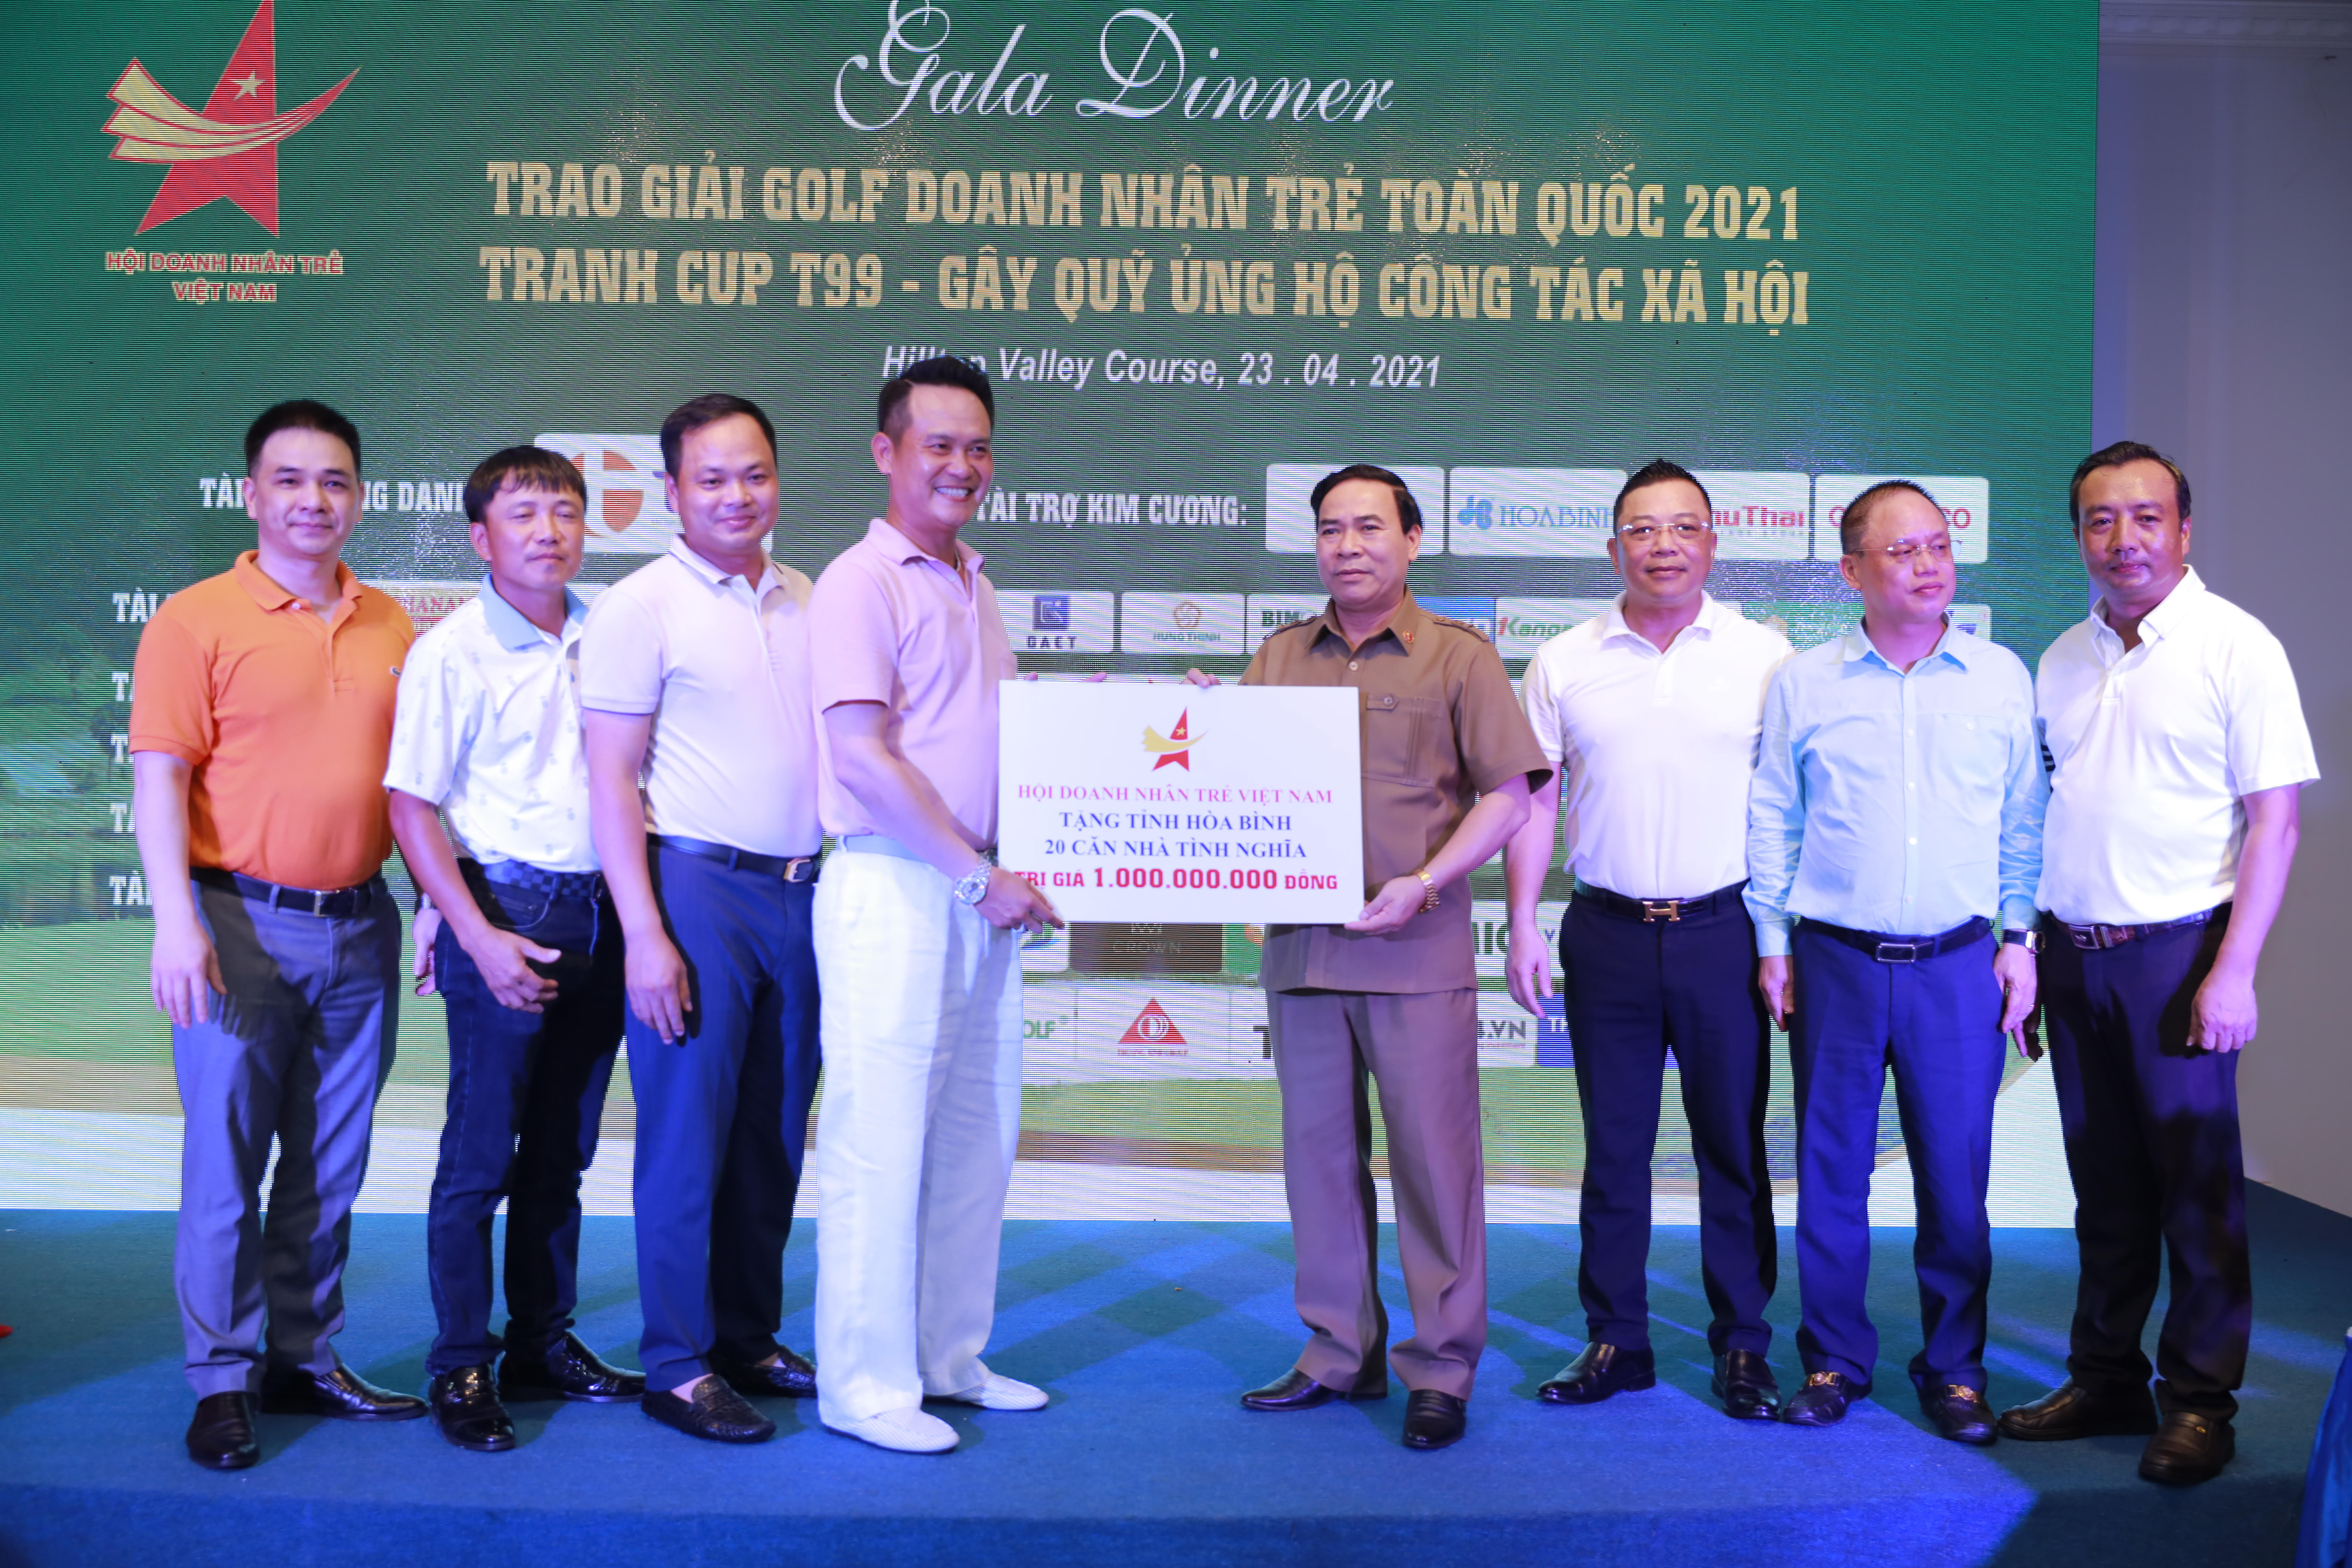 Hội Doanh nhân trẻ Việt Nam đã trích ra 1 tỷ đồng để xây tặng 20 căn nhà tình nghĩa cho tỉnh Hòa Bình